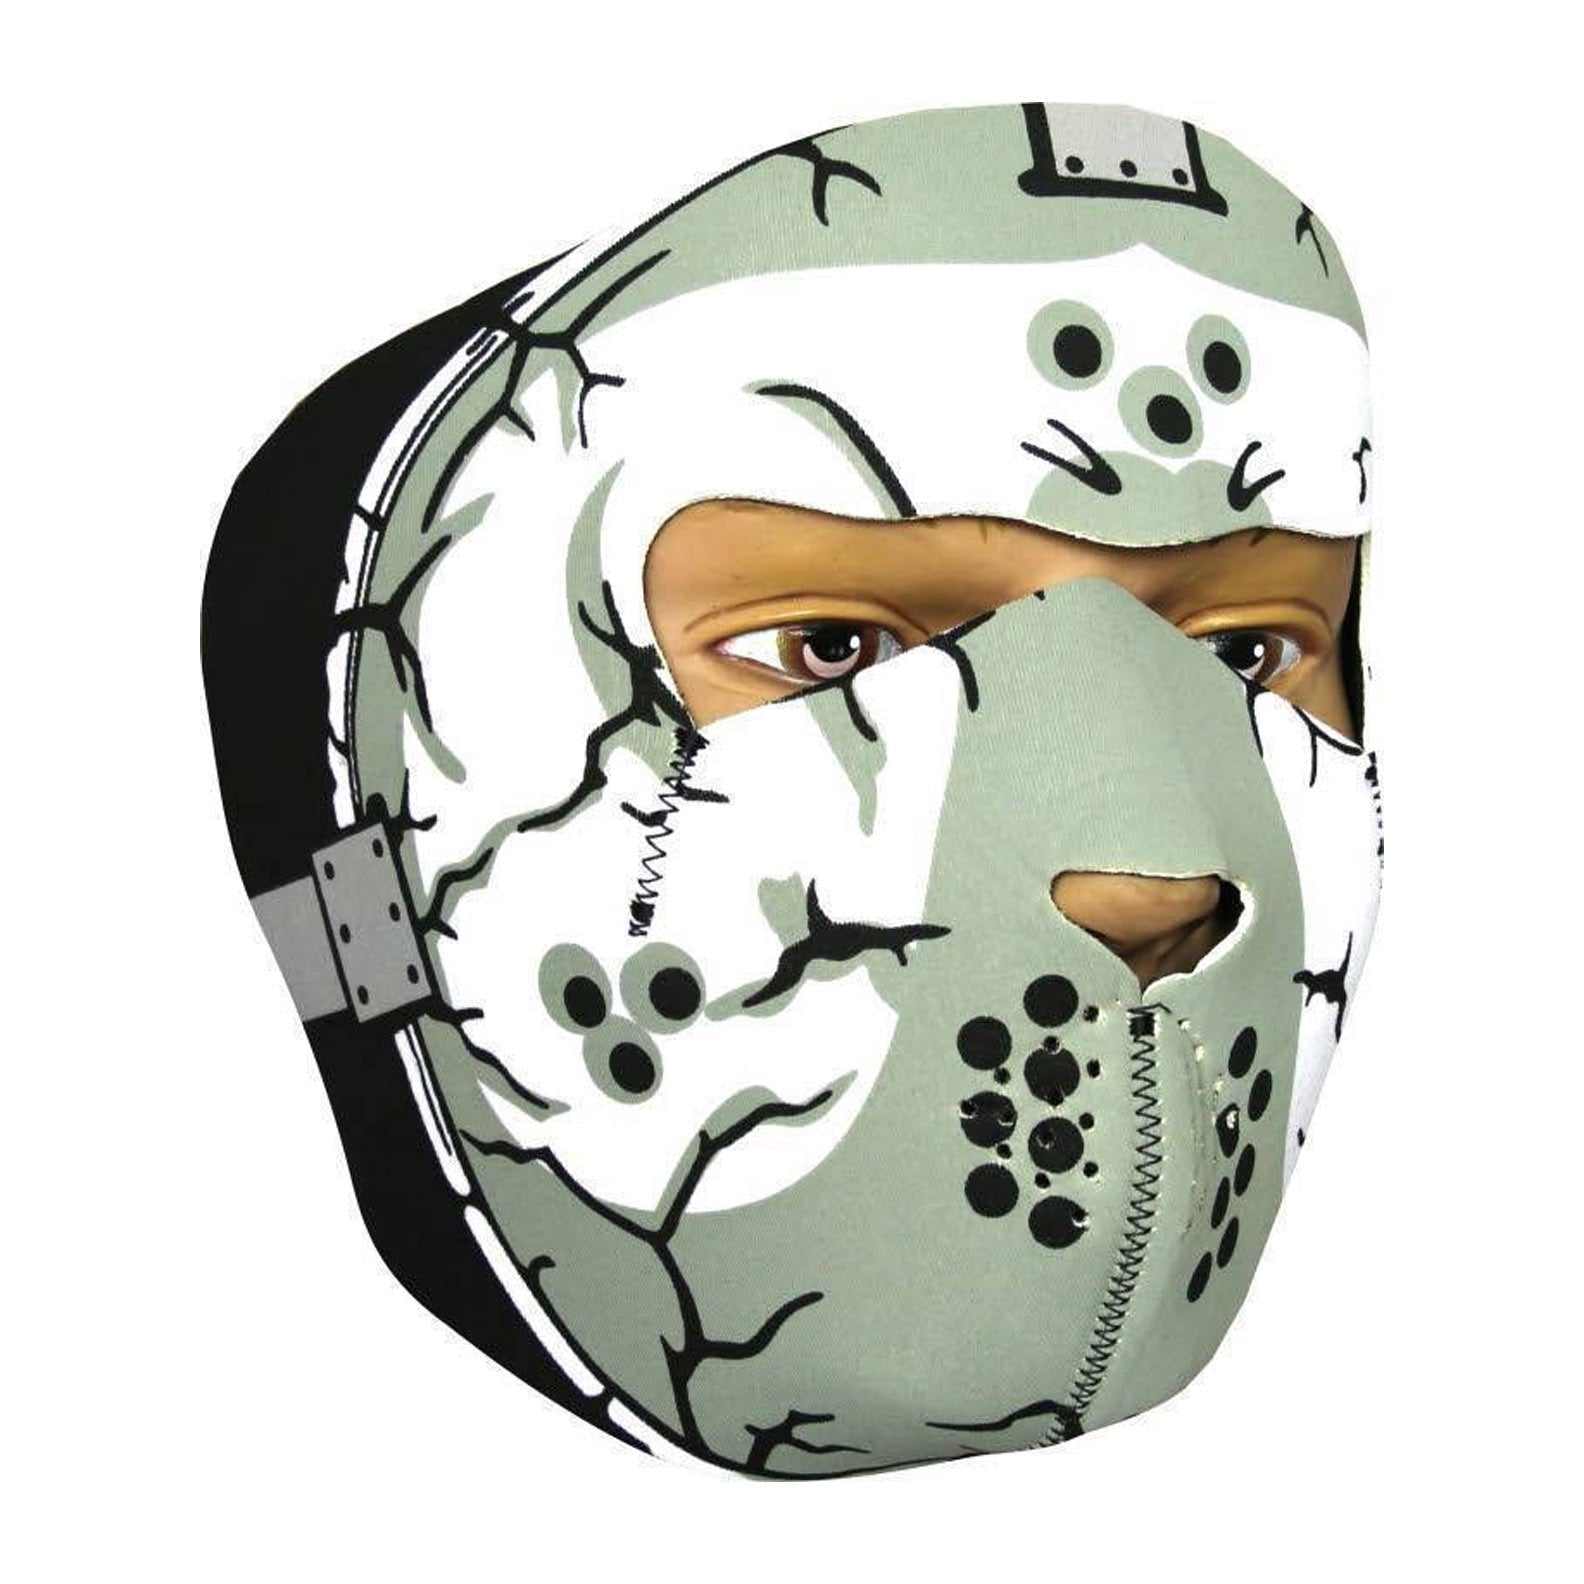 Viper-Neoprene-Full-Face-Masks